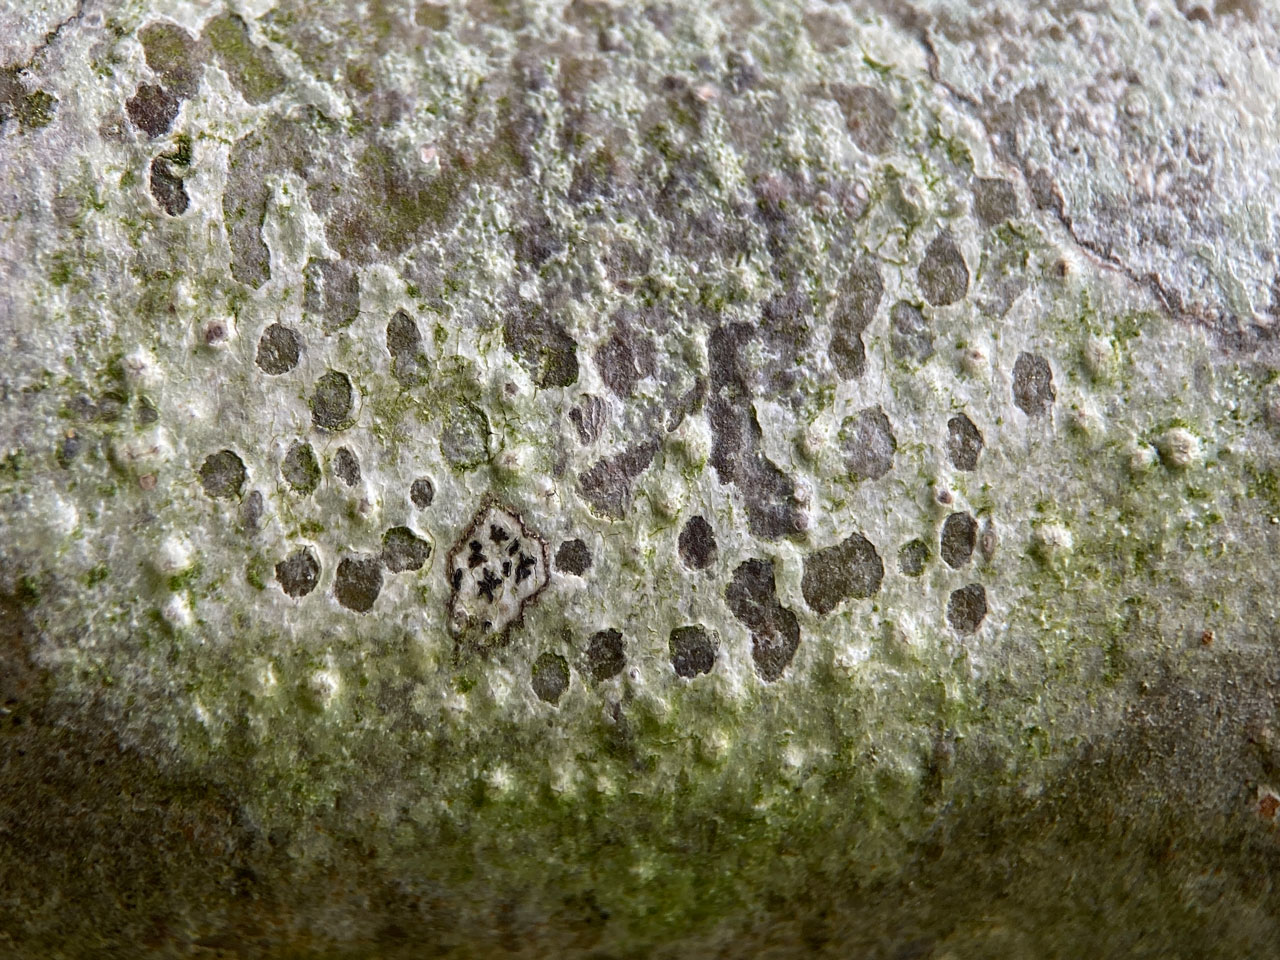 Pertusaria leioplaca, Beech branch, Shepherds Gutter, New Forest